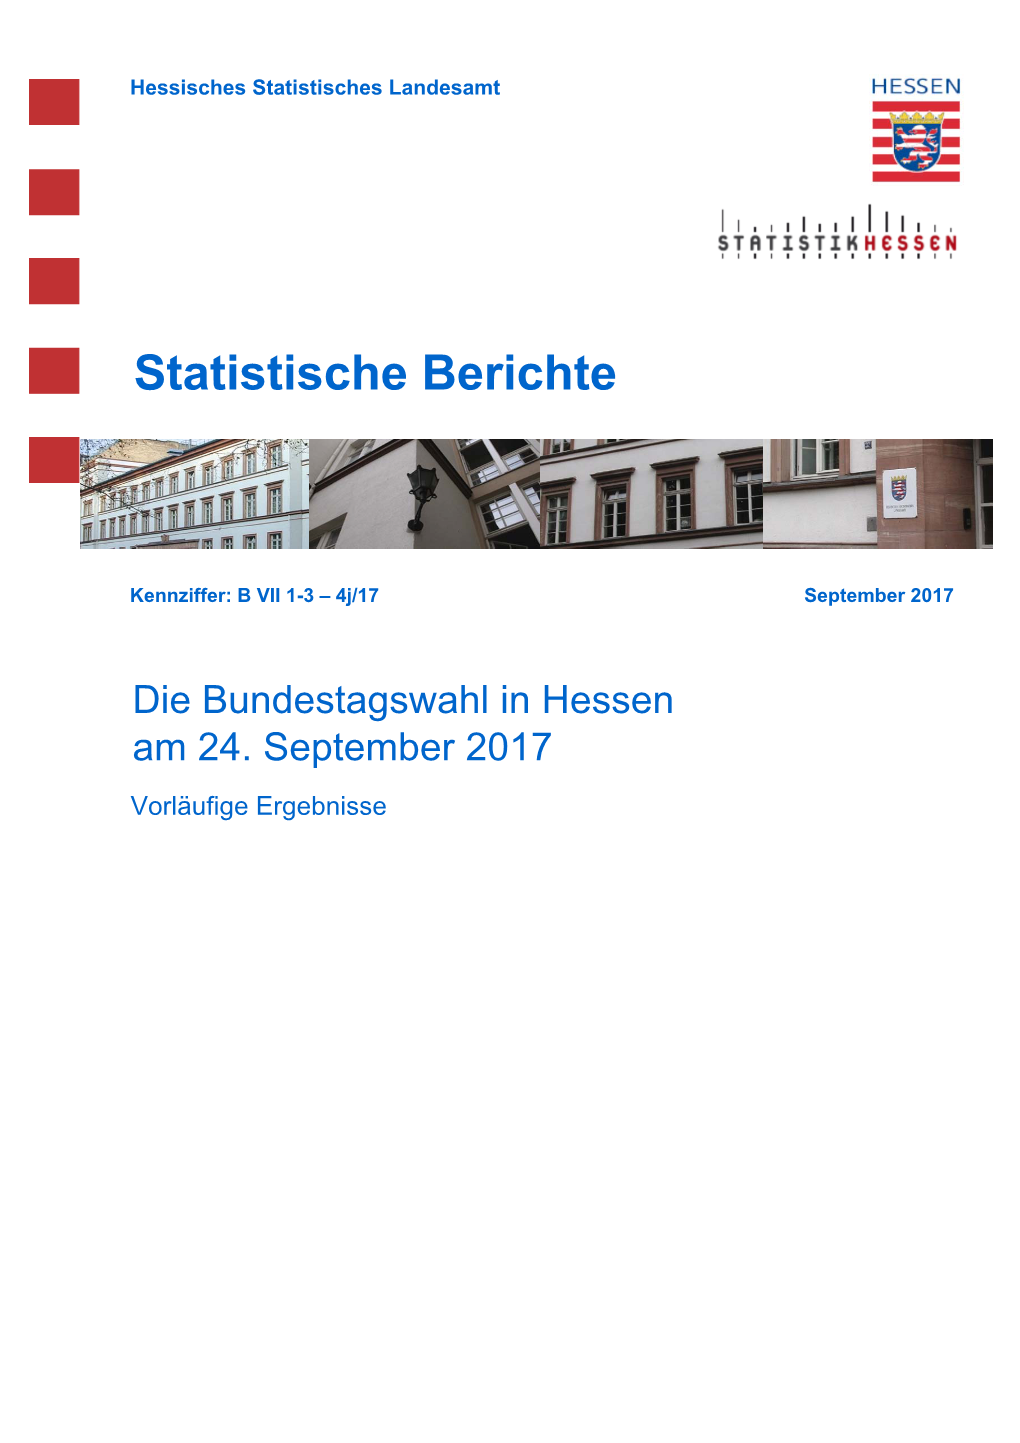 Die Bundestagswahl in Hessen Am 24. September 2017 Vorläufige Ergebnisse Hessisches Statistisches Landesamt, Wiesbaden